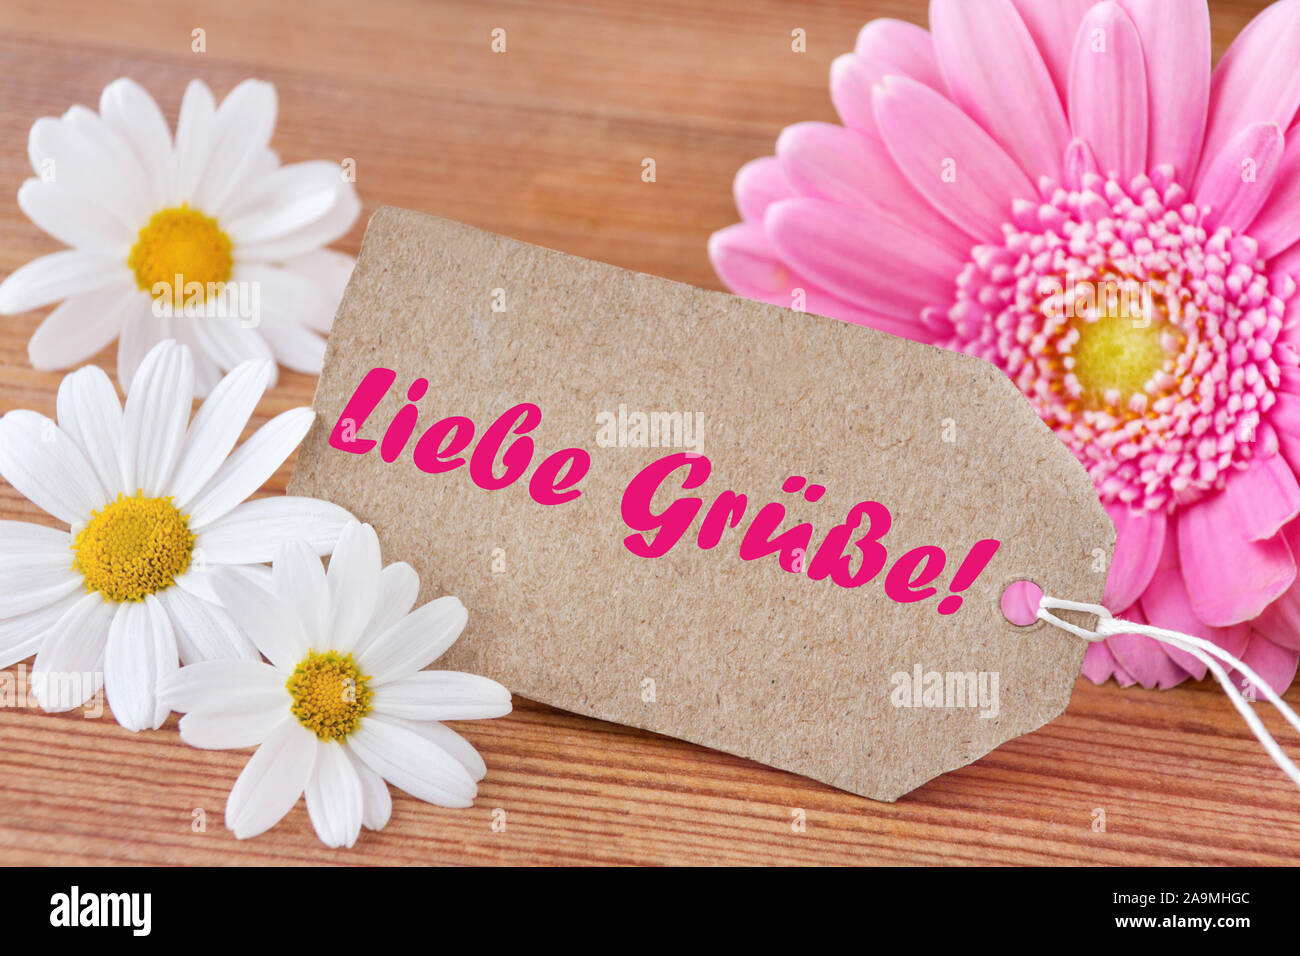 Deutsche liebe Grüße Blumen auf Holz als Hintergrund Stockfotografie - Alamy